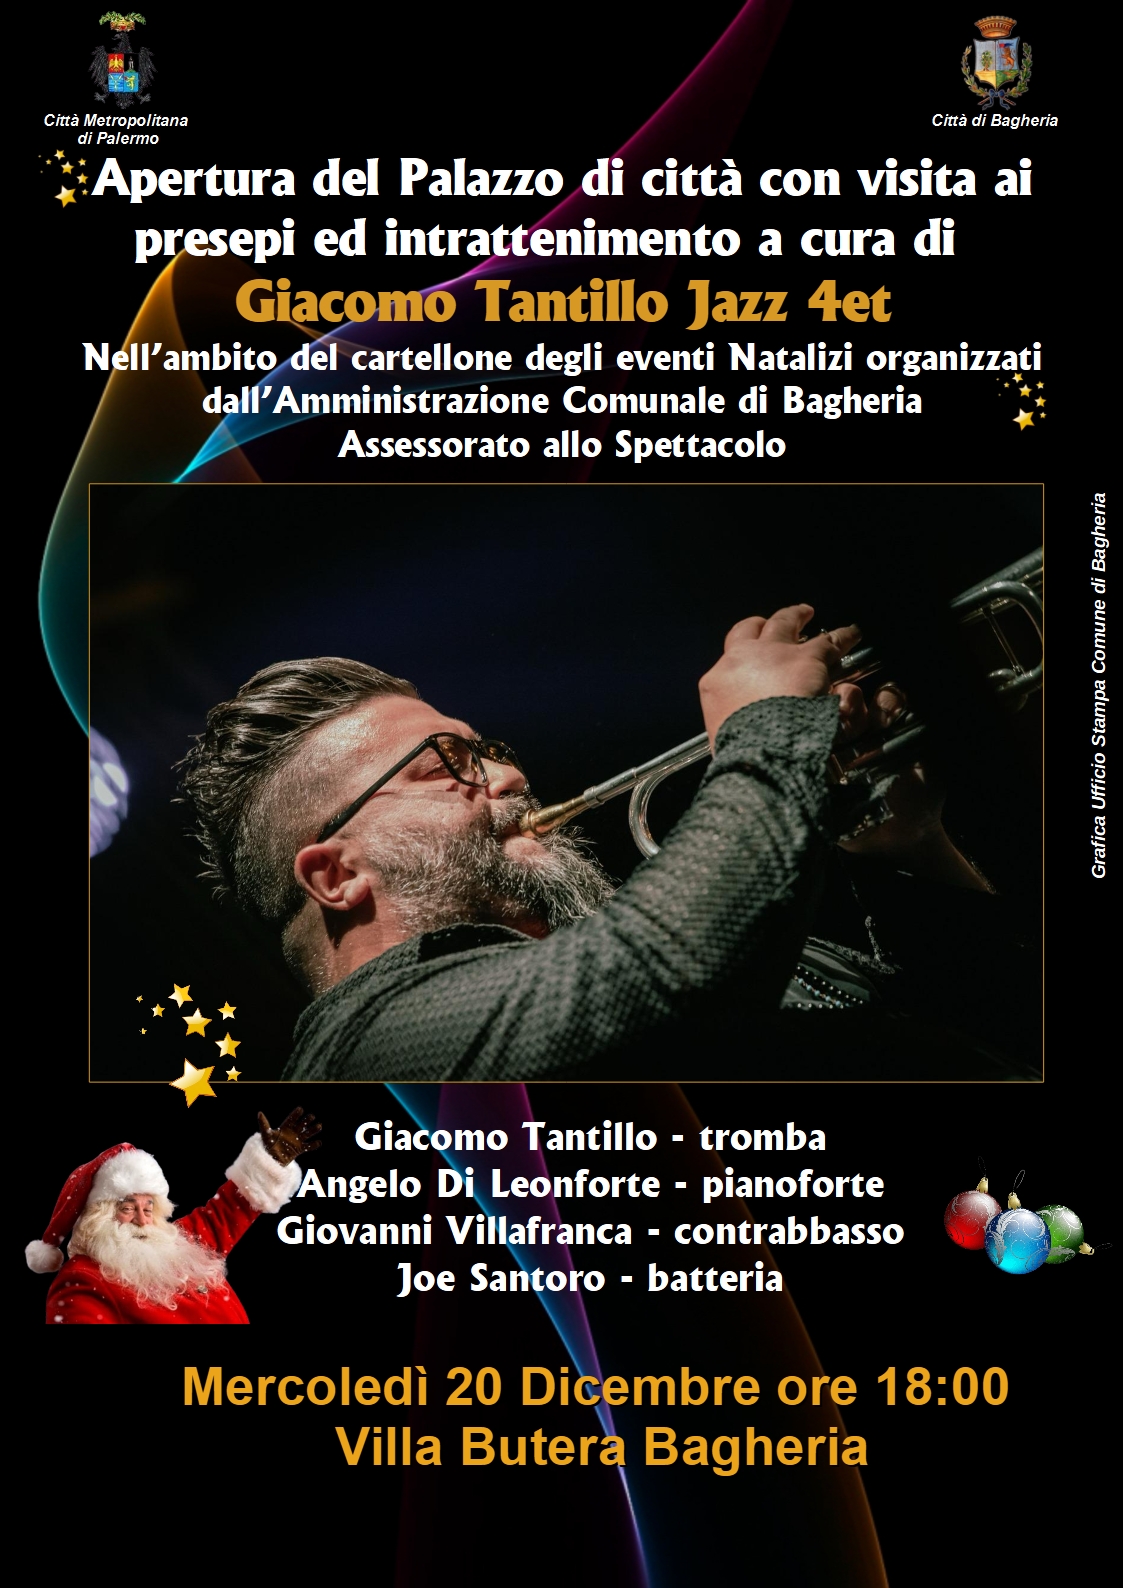 Con l'intrattenimento del jazzista Giacomo Tantillo domani apertuta di villa Butera con visita dei presepi.